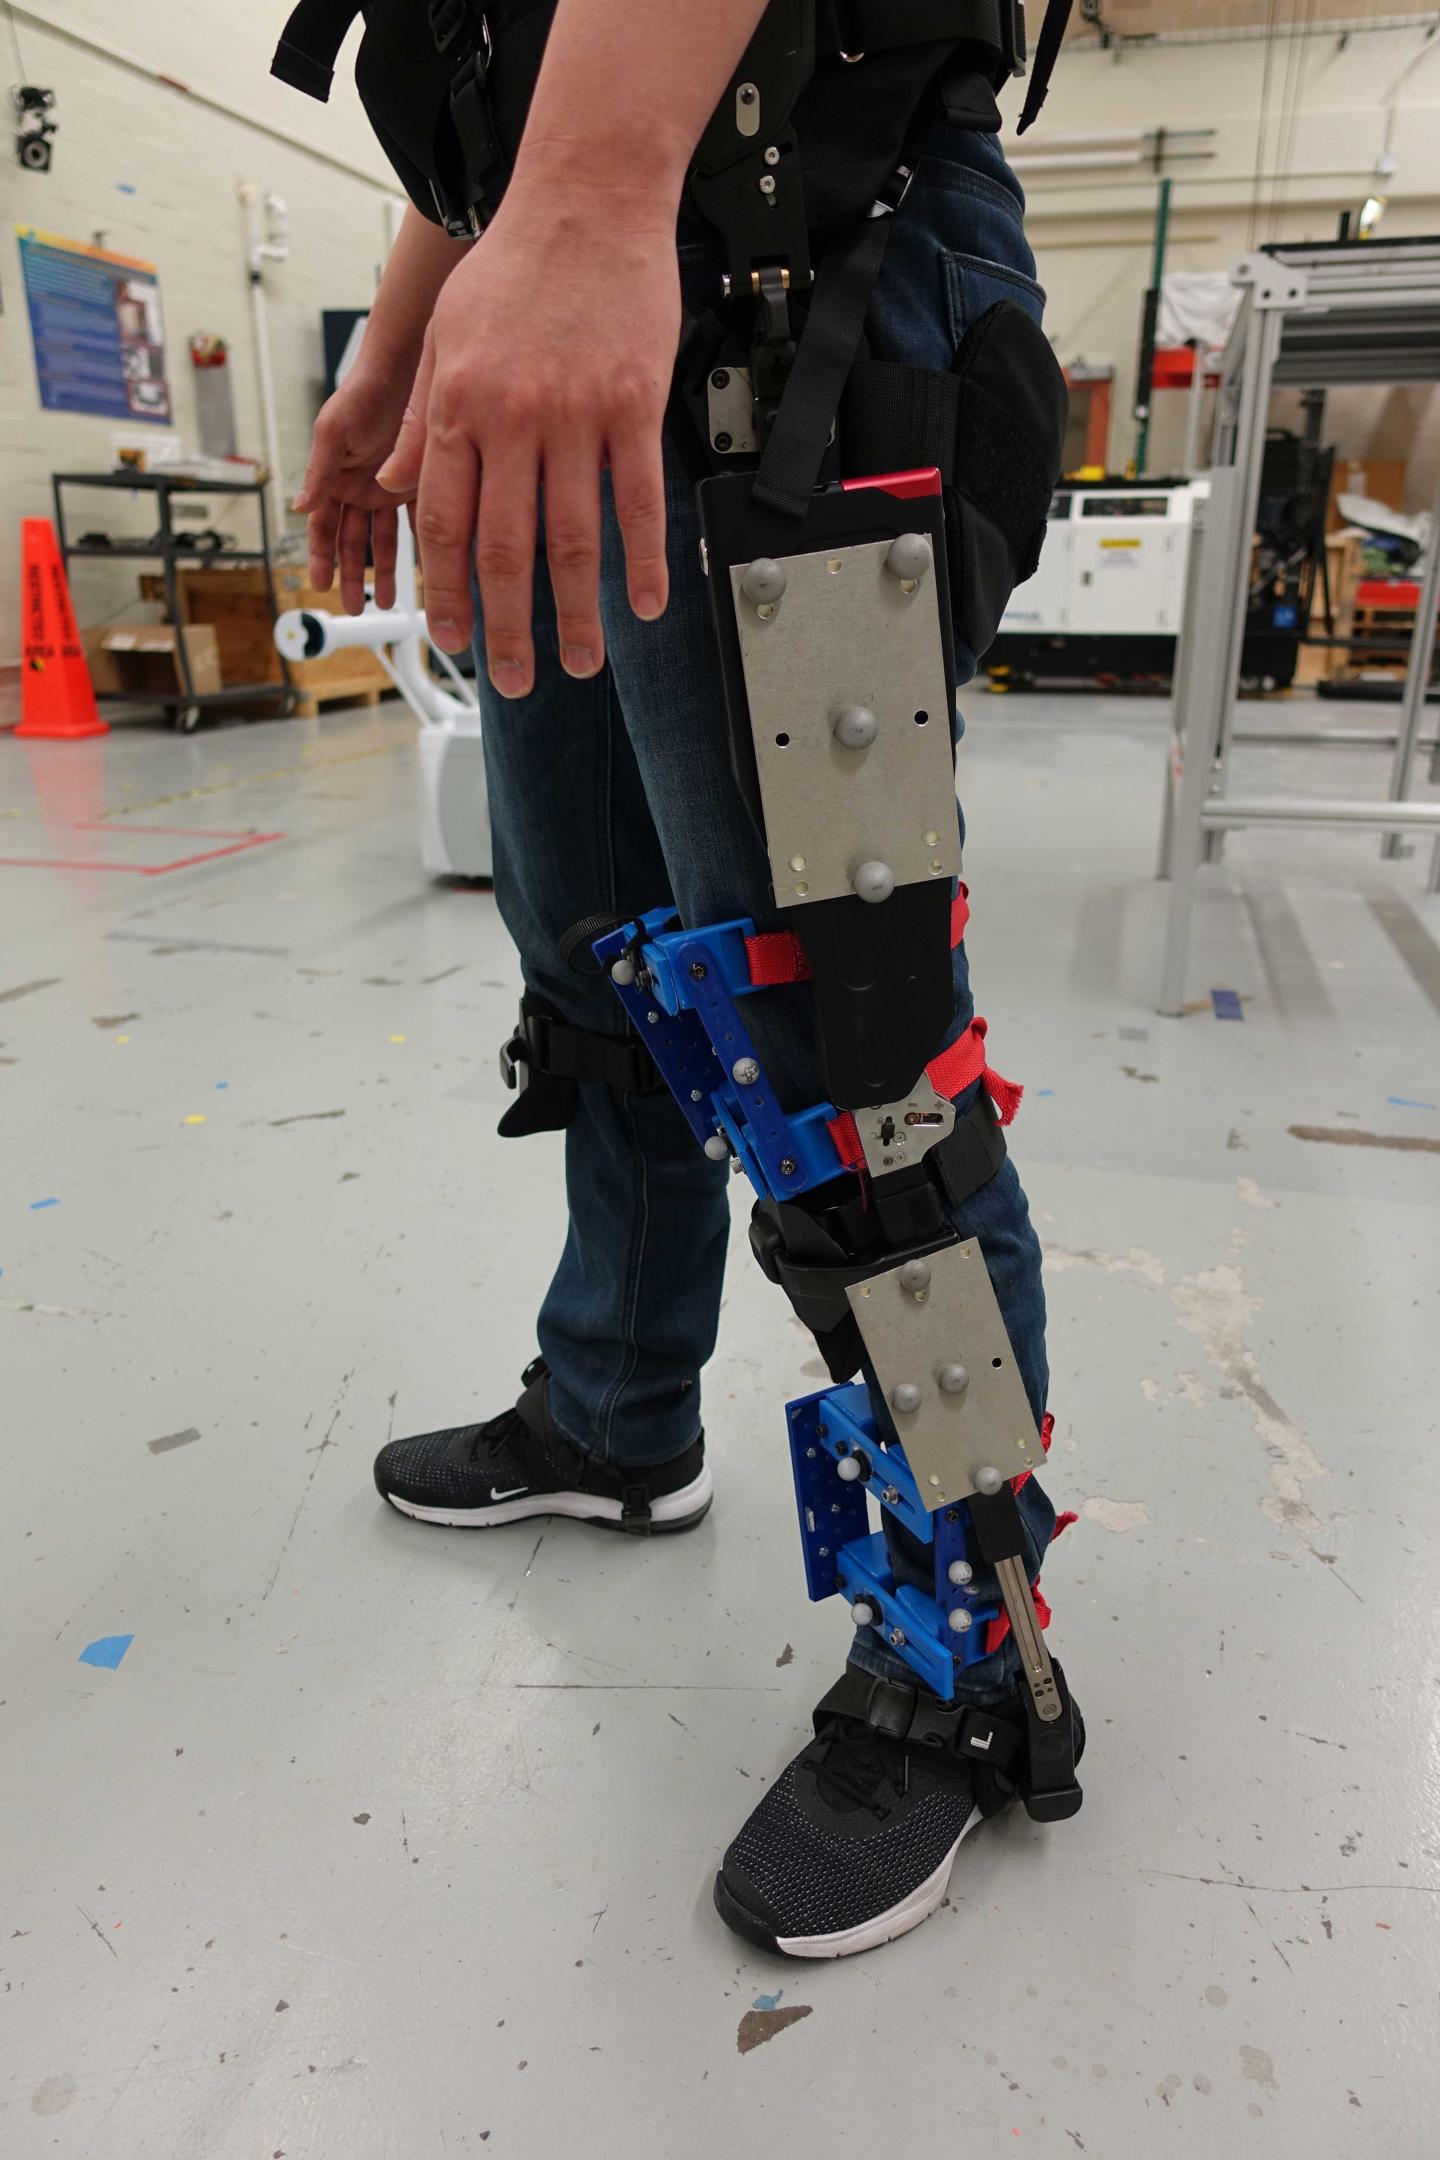 Exoskeleton Fit Apparatus